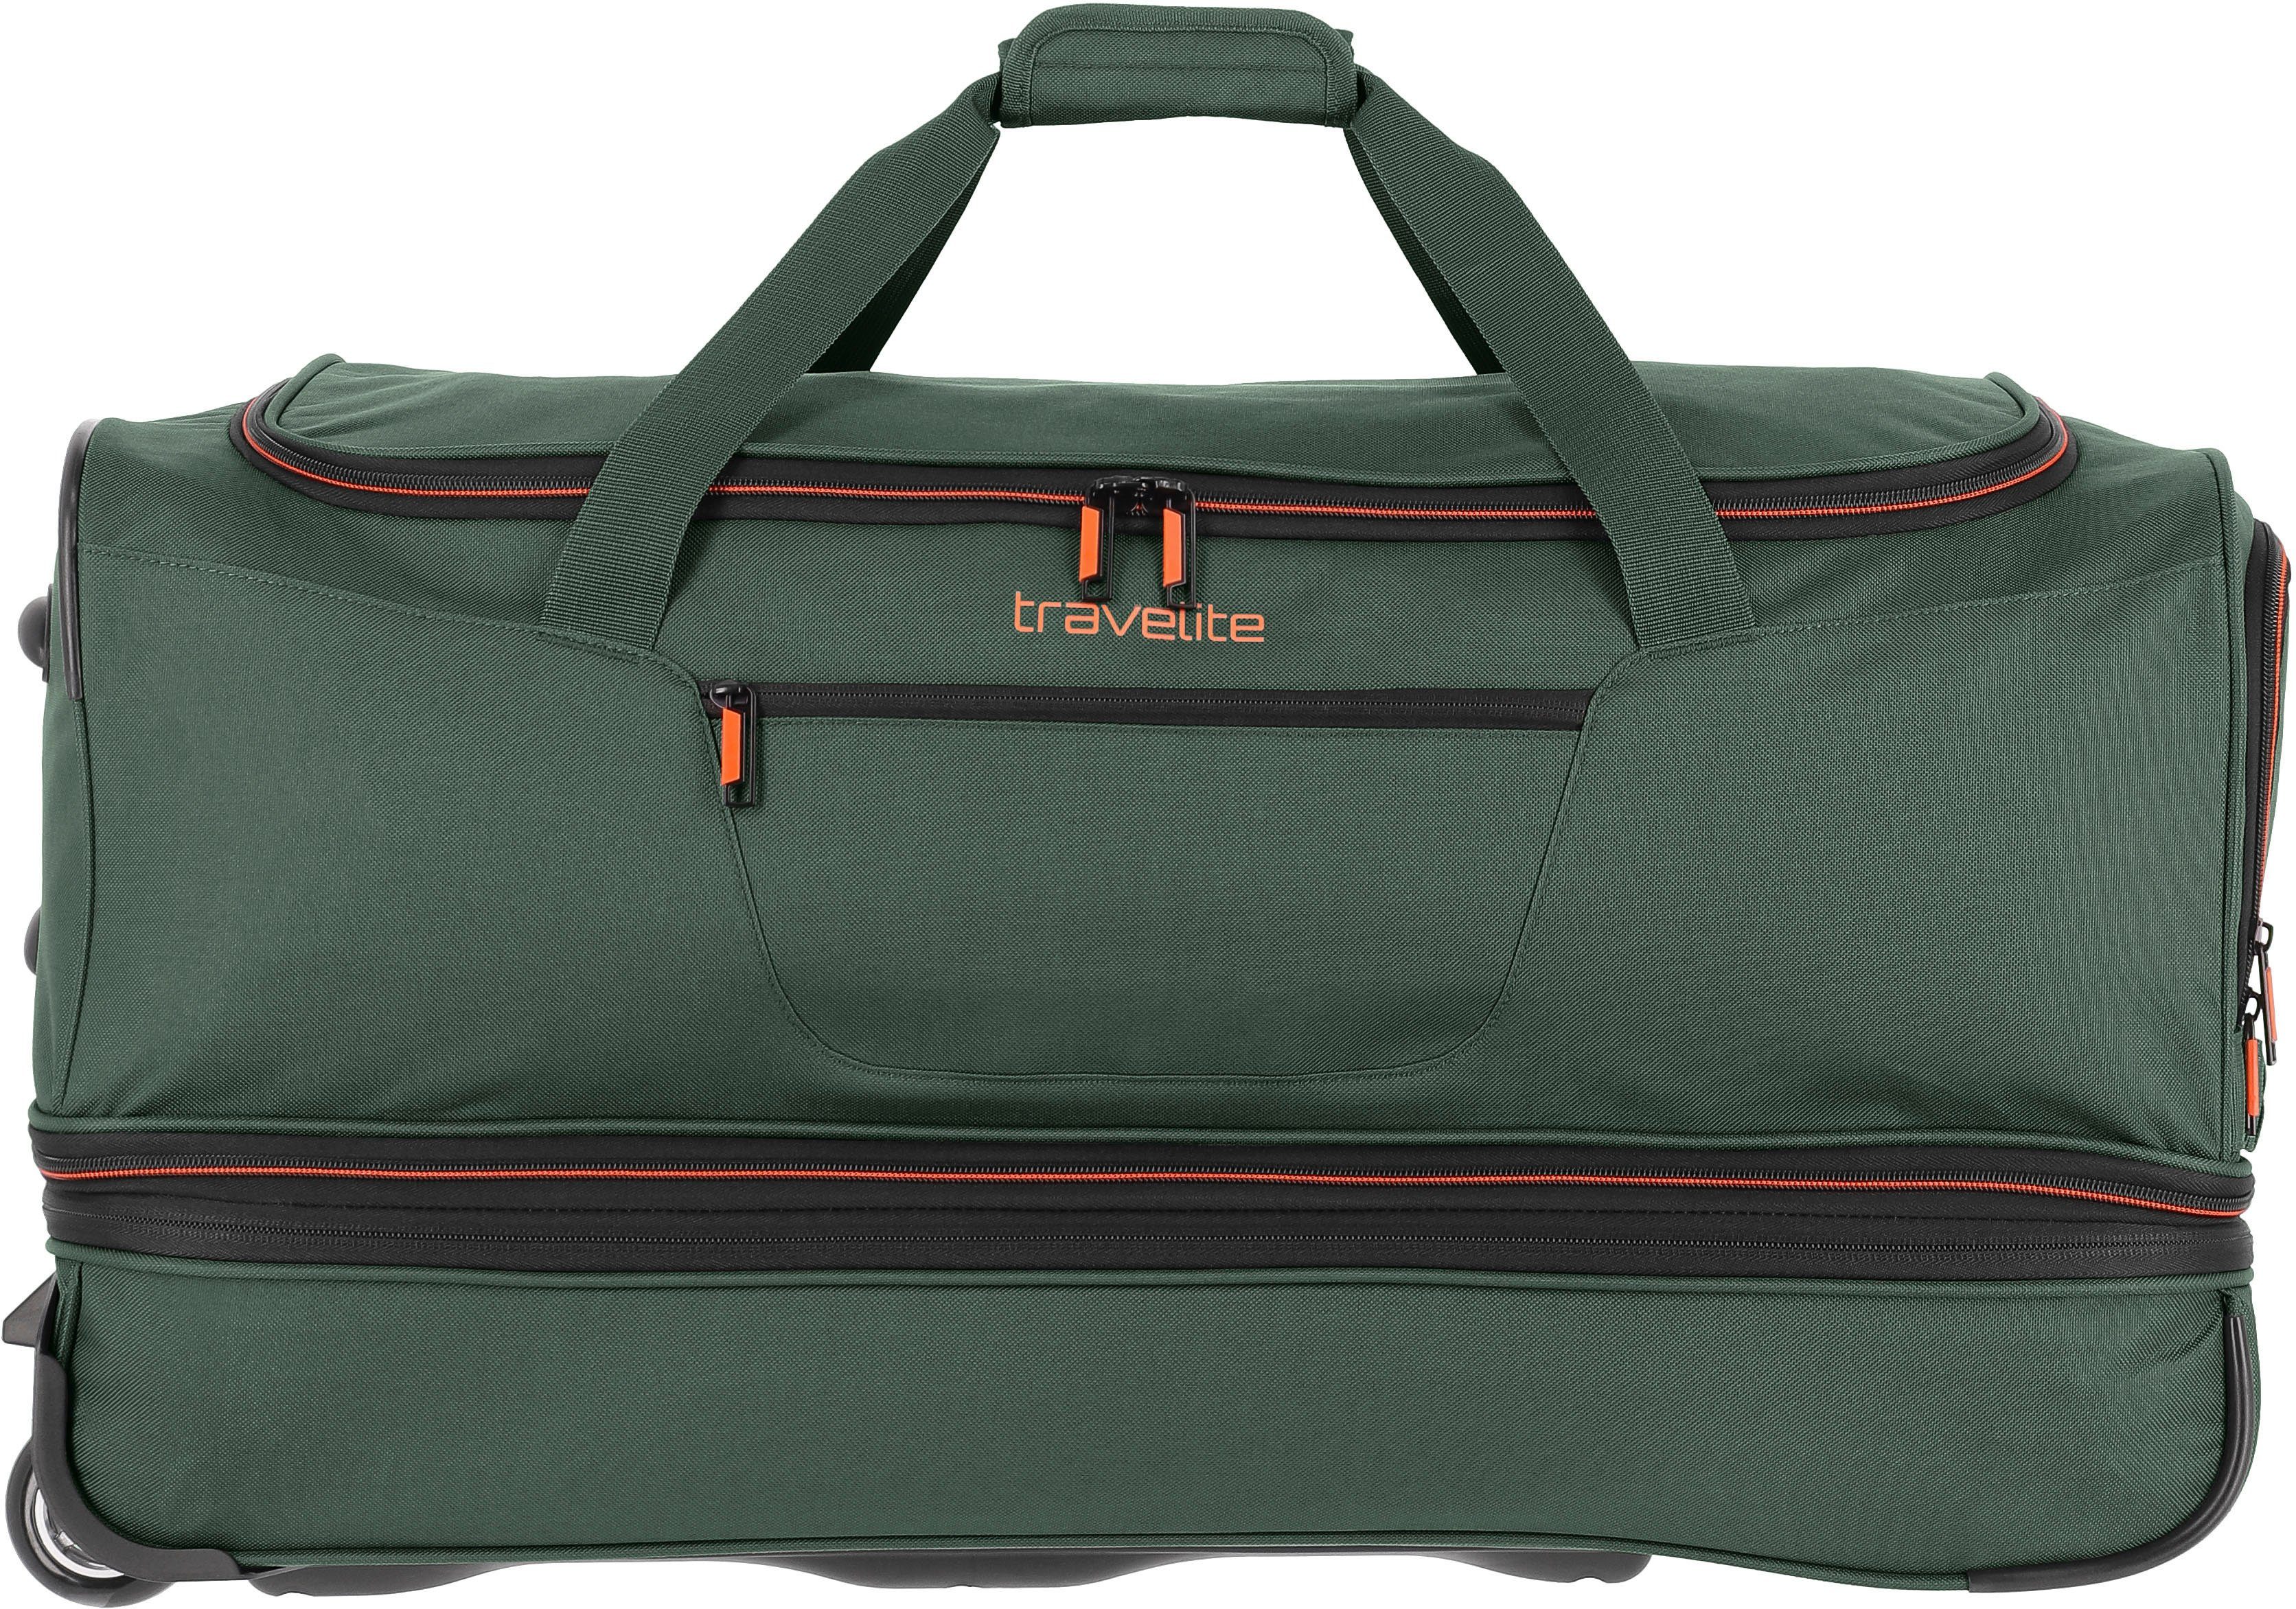 Reisetasche mit 70 Basics, dunkelgrün, cm, Rollen travelite